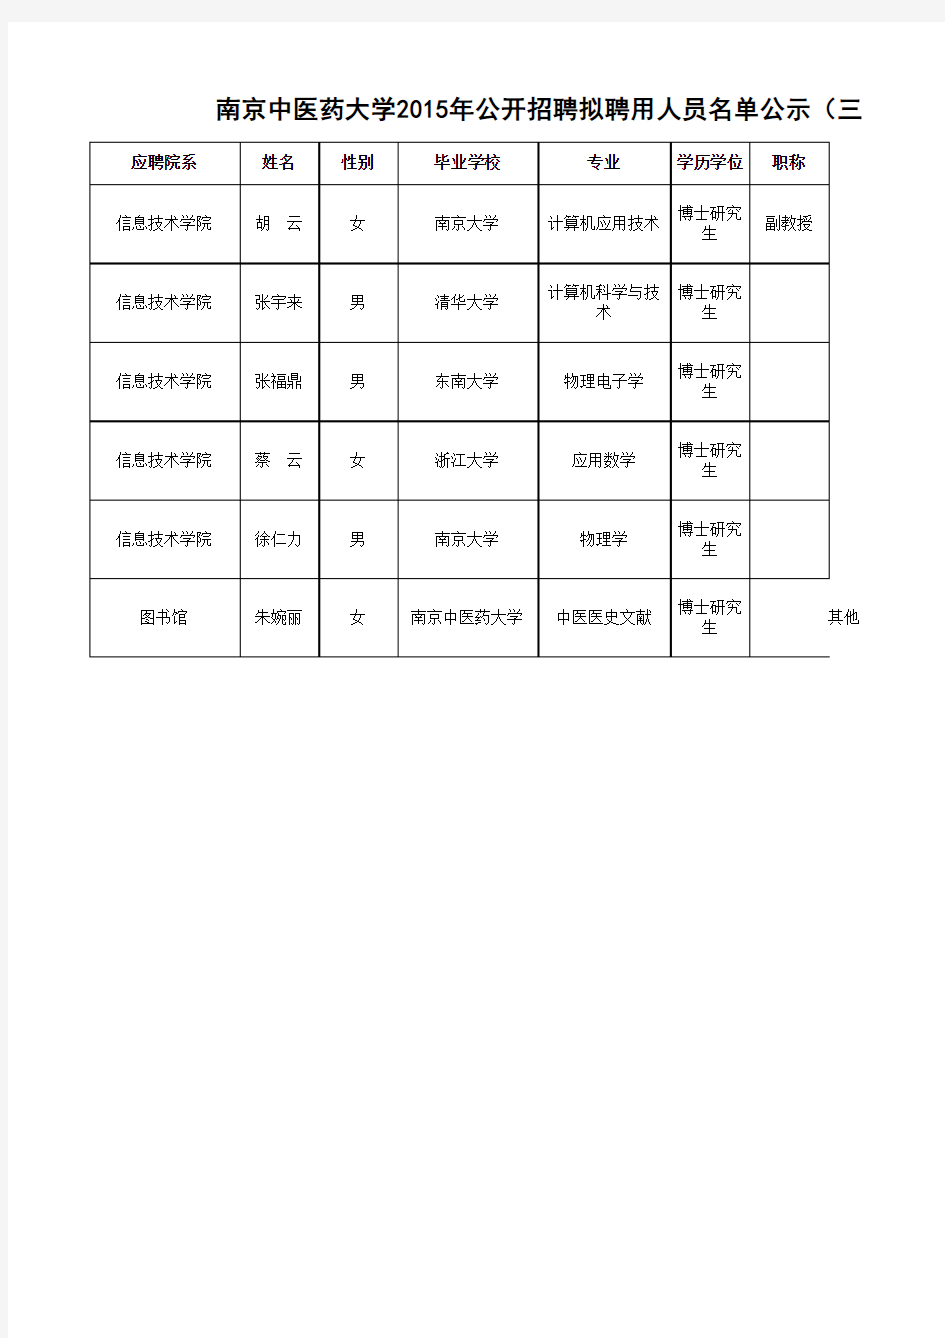 南京中医药大学2015年公开招聘拟聘用人员名单公示(三)